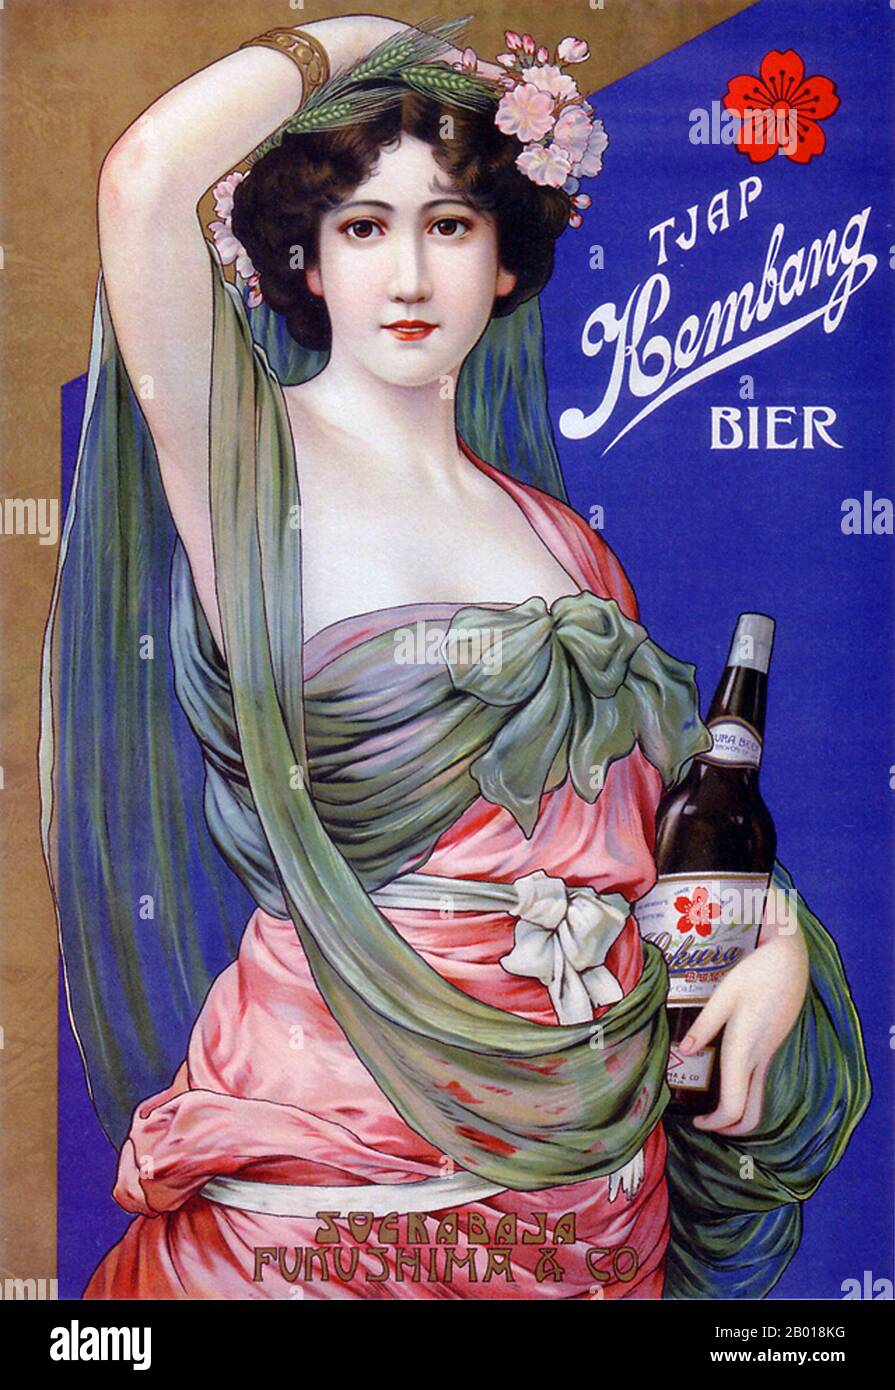 Japan: Werbeplakat für Kembang (Sakura Export) Bier, c. 1912-1916. Eine europäische Frau wirbt für Kembang (Sakura Export) Bier, das offenbar auf einen europäischen (oder im Ausland lebenden) Markt abzielt - vielleicht ein holländisches Joint-Unternehmen mit Sitz in den Niederländisch-Ostindien (Surabaya, Indonesien). Stockfoto